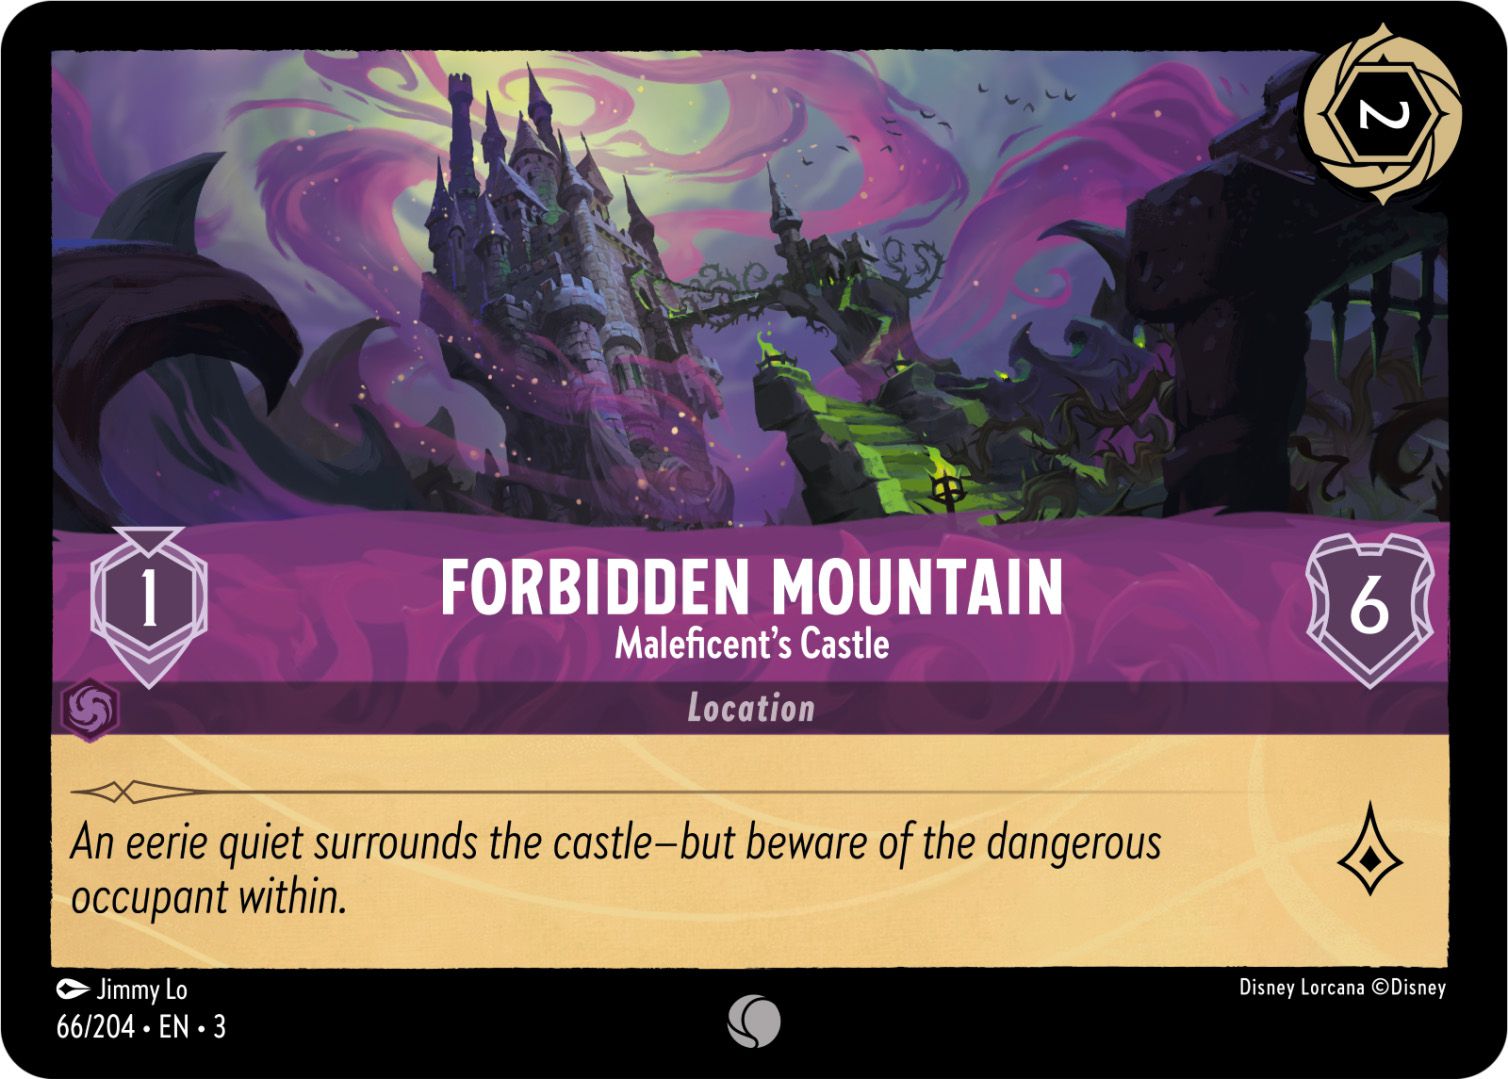 邪悪の城、禁断の山の頂上です。紫と緑でレンダリングされています。6の意志力を持つロケーションで、移動値は1、知識の値は1です。